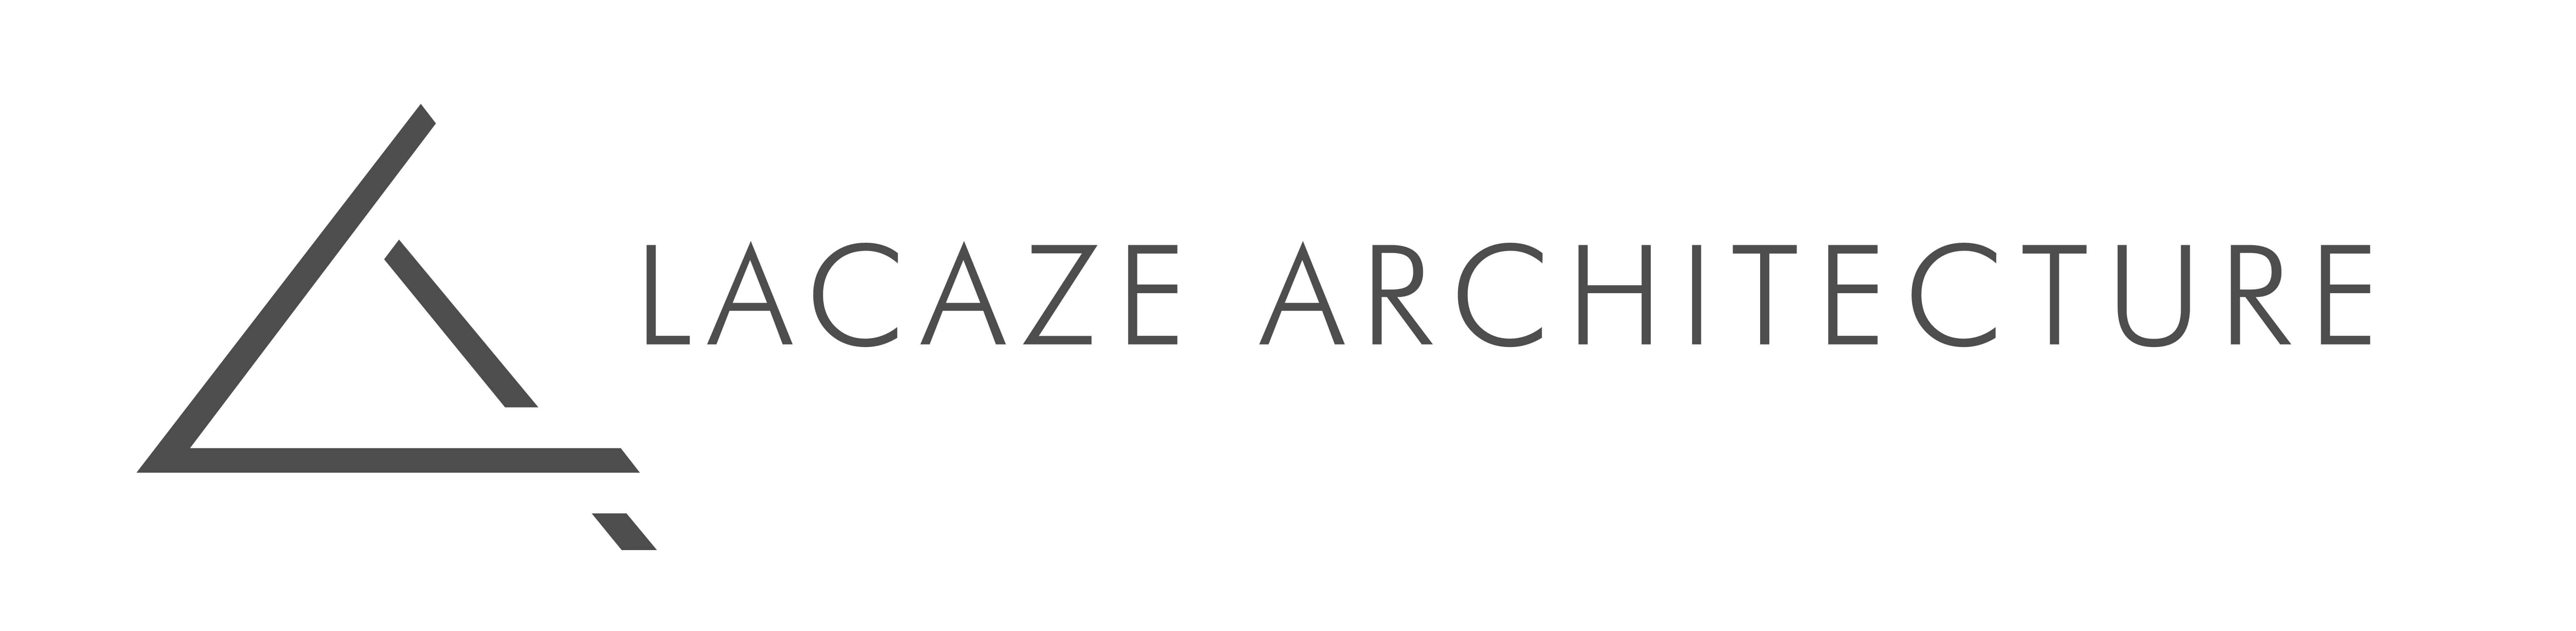 Lacaze Architecture